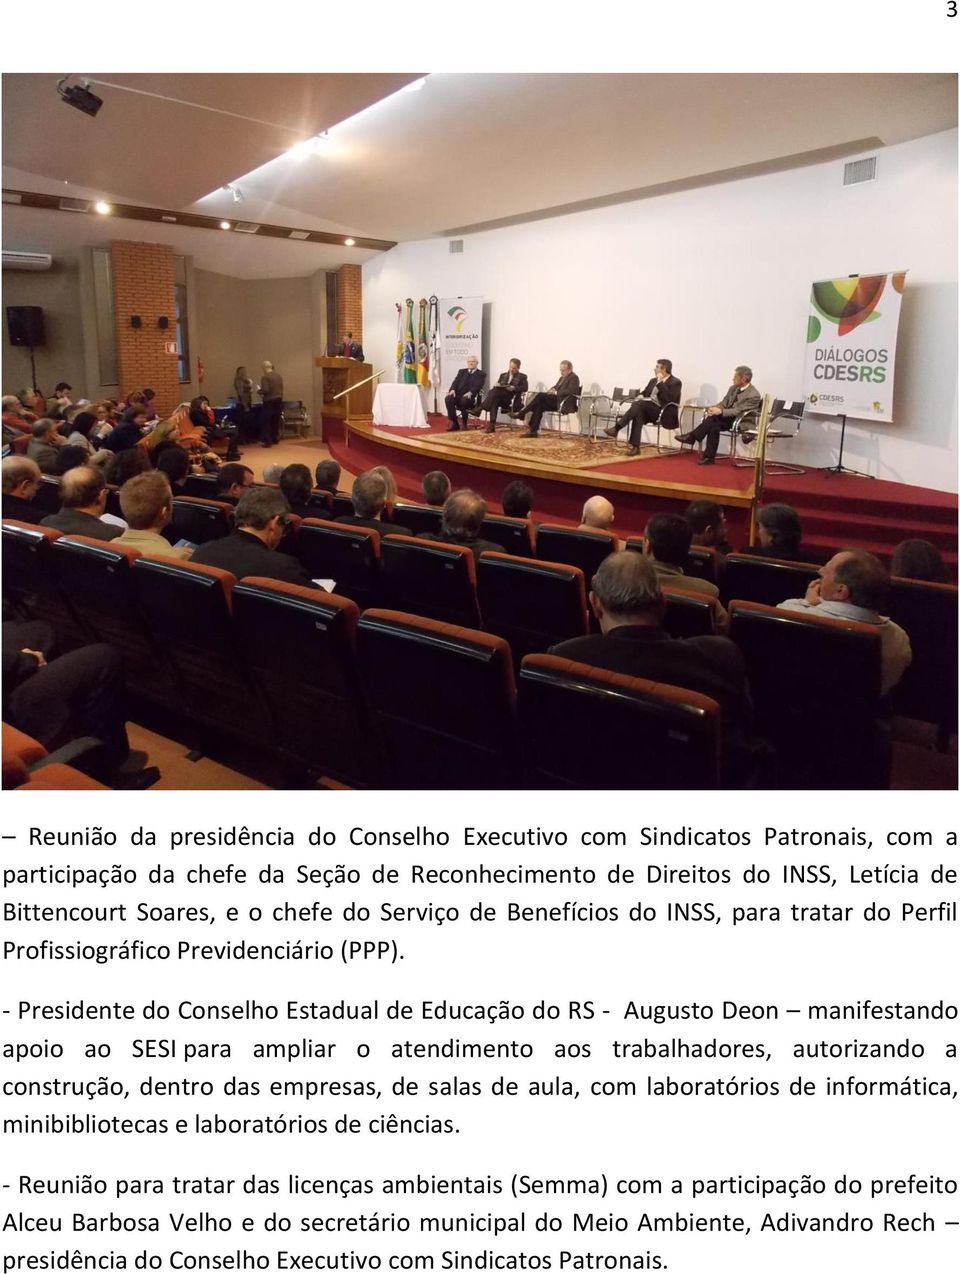 - Presidente do Conselho Estadual de Educação do RS - Augusto Deon manifestando apoio ao SESI para ampliar o atendimento aos trabalhadores, autorizando a construção, dentro das empresas, de salas